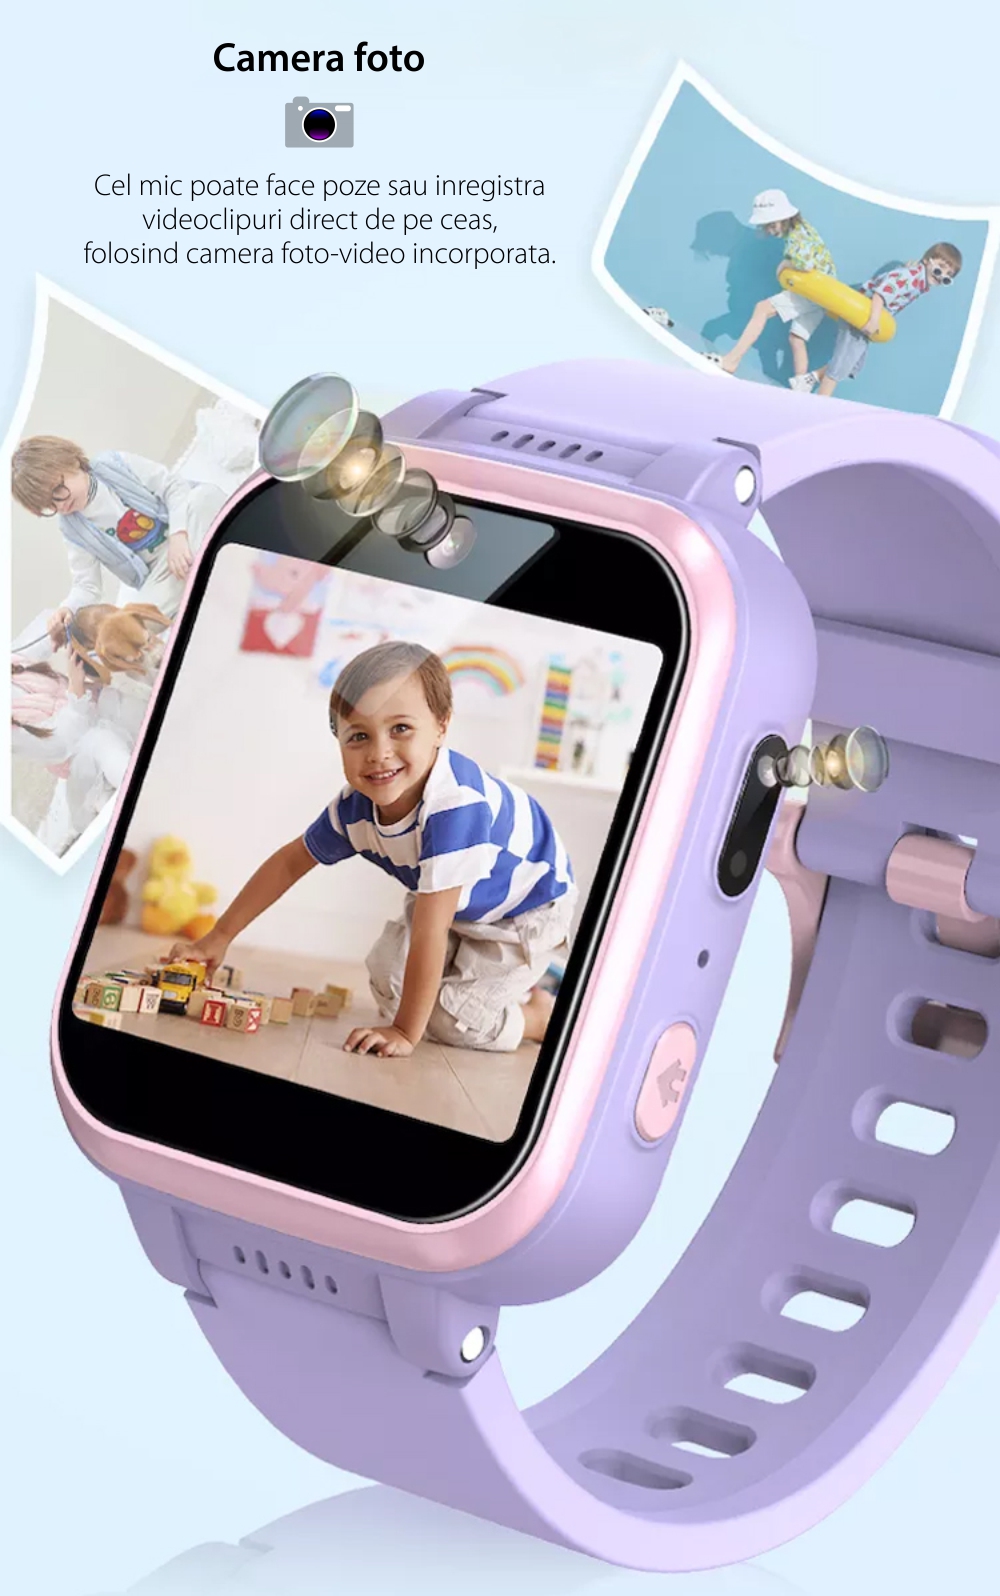 Ceas Smartwatch Pentru Copii XK Fitness Y90, fara GPS, cu Pedometru,  Jocuri, Camera, Muzica, Lanterna, Alarma, Mov